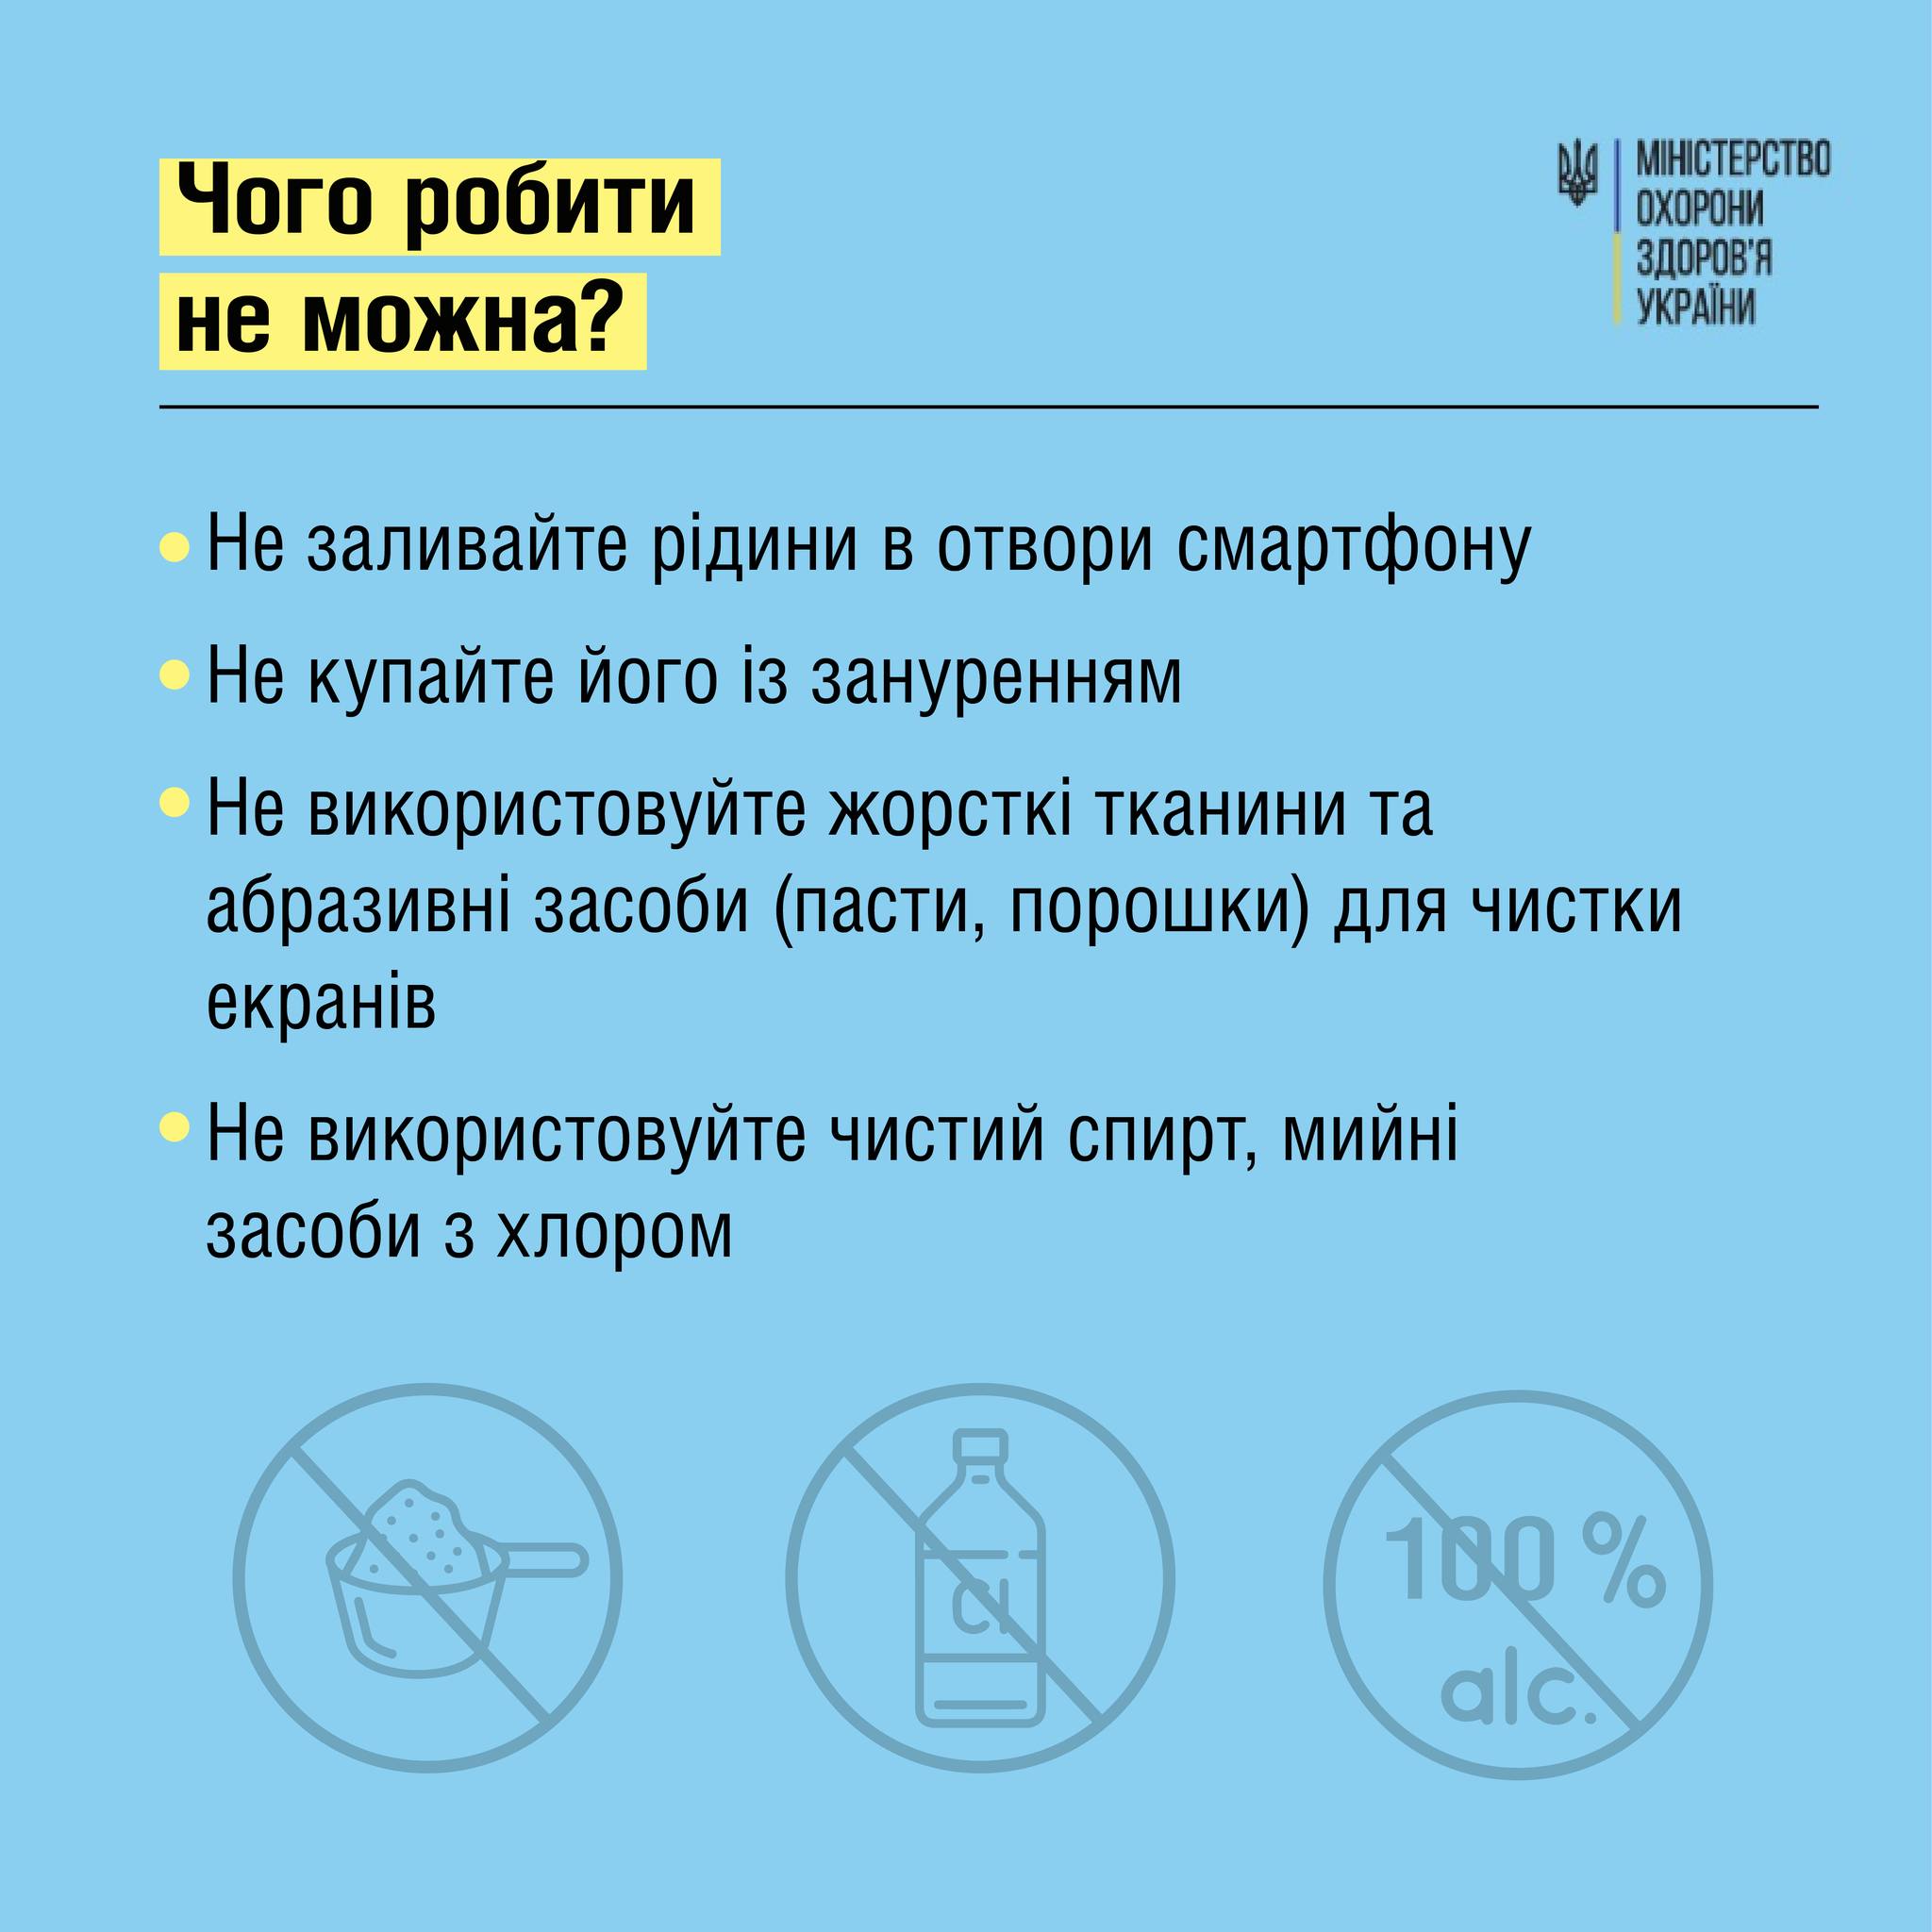 Советы МОЗ о чистке смартфона, с.3